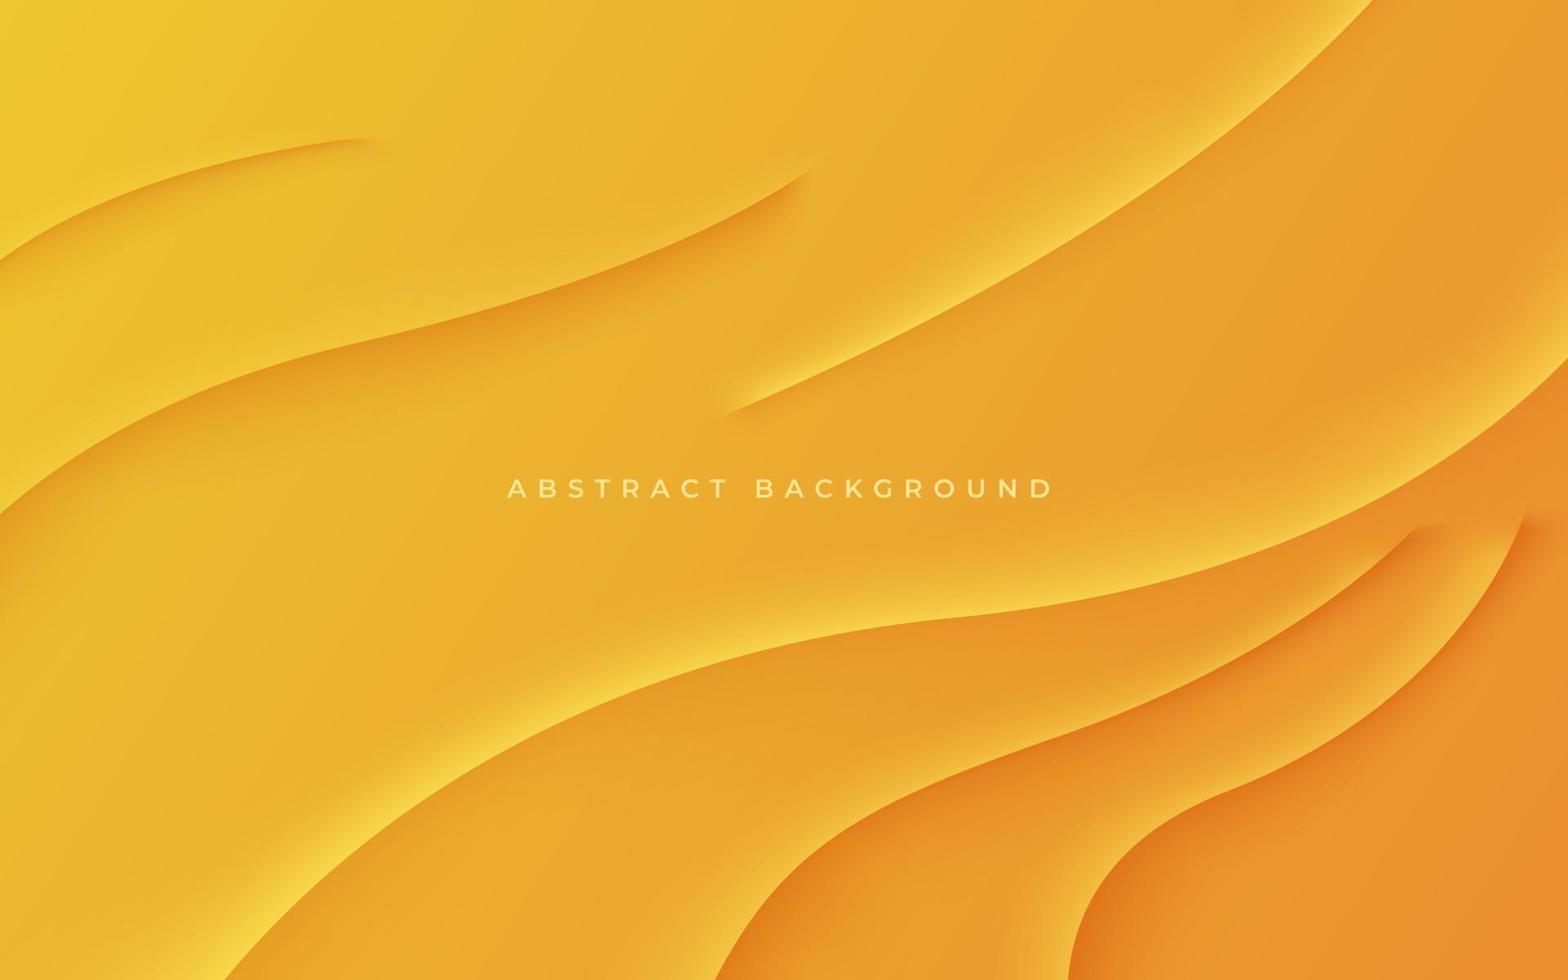 astratto giallo arancia dinamico ondulato ombra e leggero moderno design geometrico futuristico vettore sfondo illustrazione.